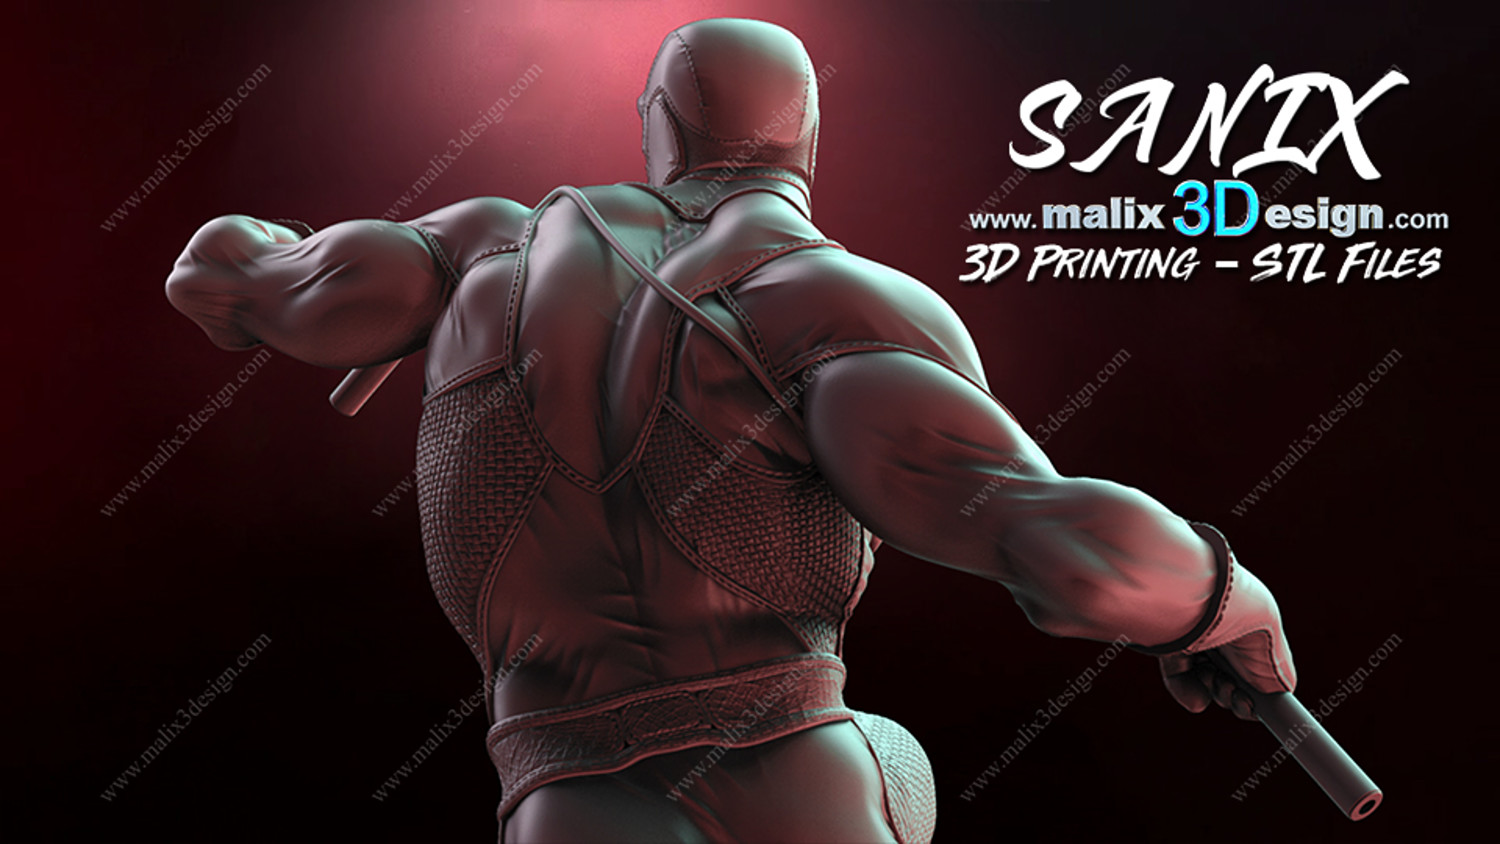 DAREDEVIL Model For 3D Printing